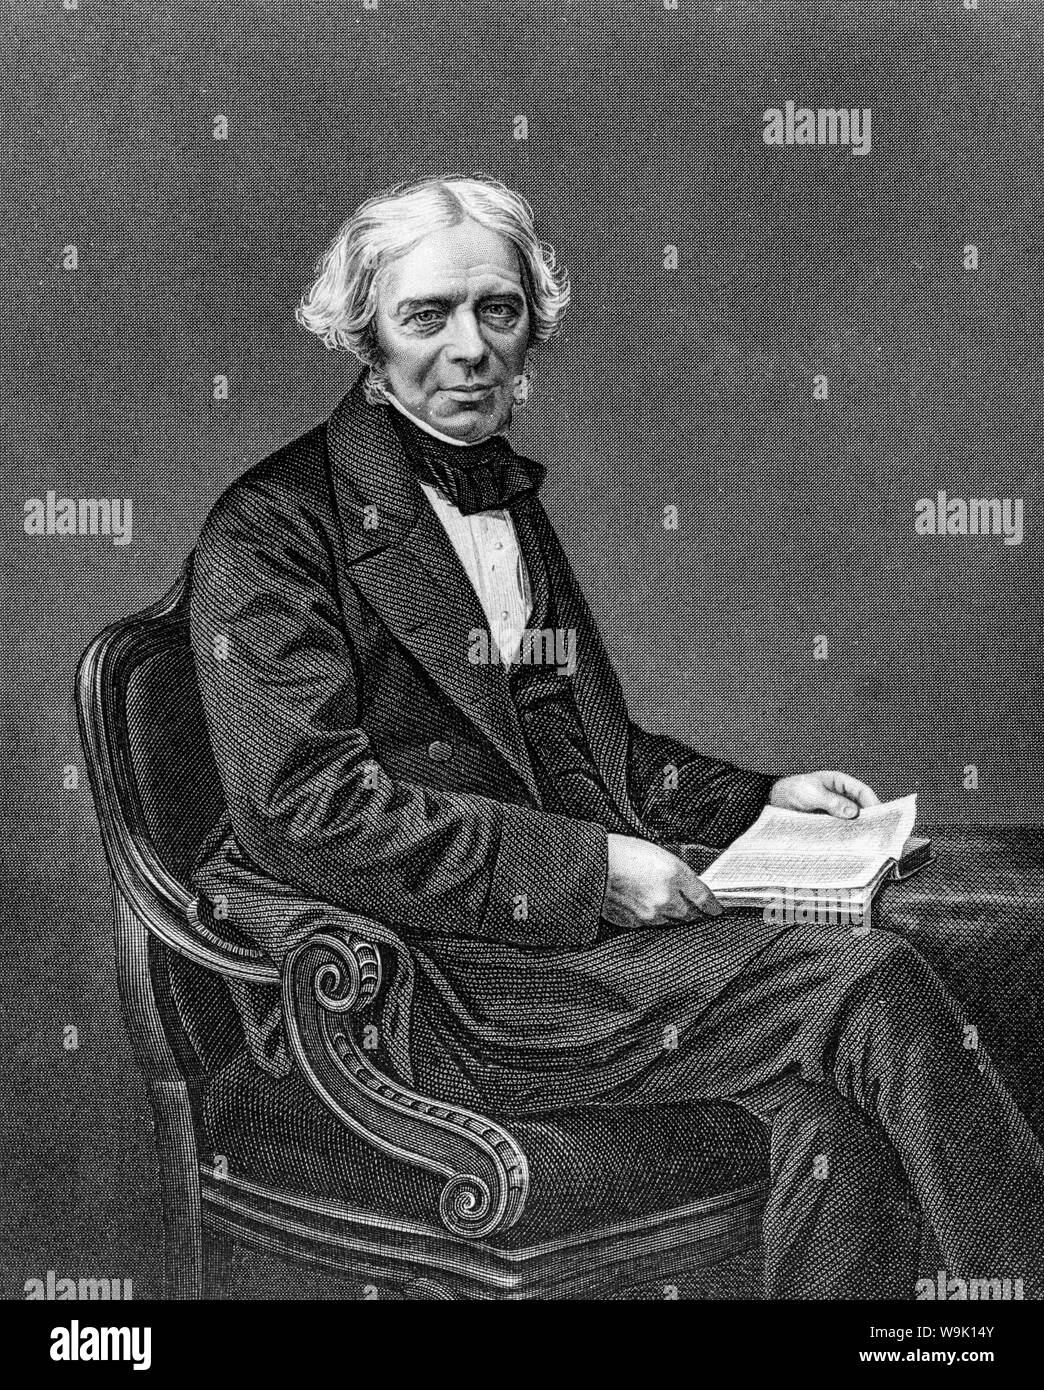 Michael Faraday (1791-1867), gravure portrait, 1859 Banque D'Images